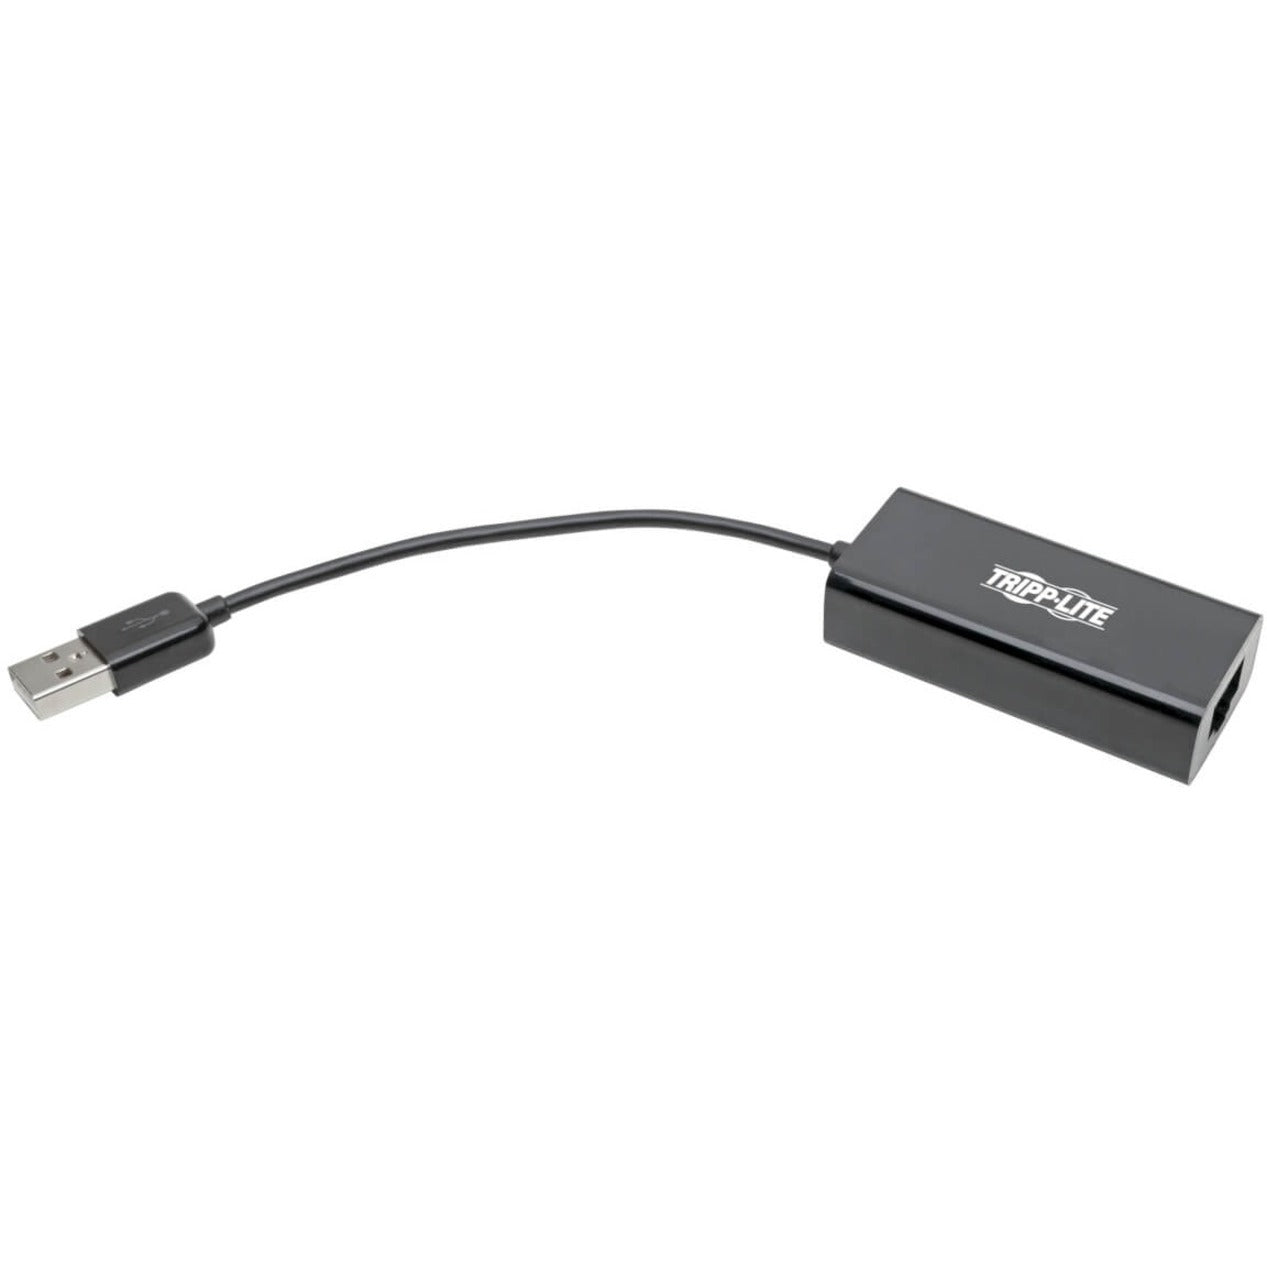 Tripp Lite U236-000-R Adaptateur USB 2.0 vers Ethernet 10/100 Mbps Connexion Réseau Facile Marque: Tripp Lite